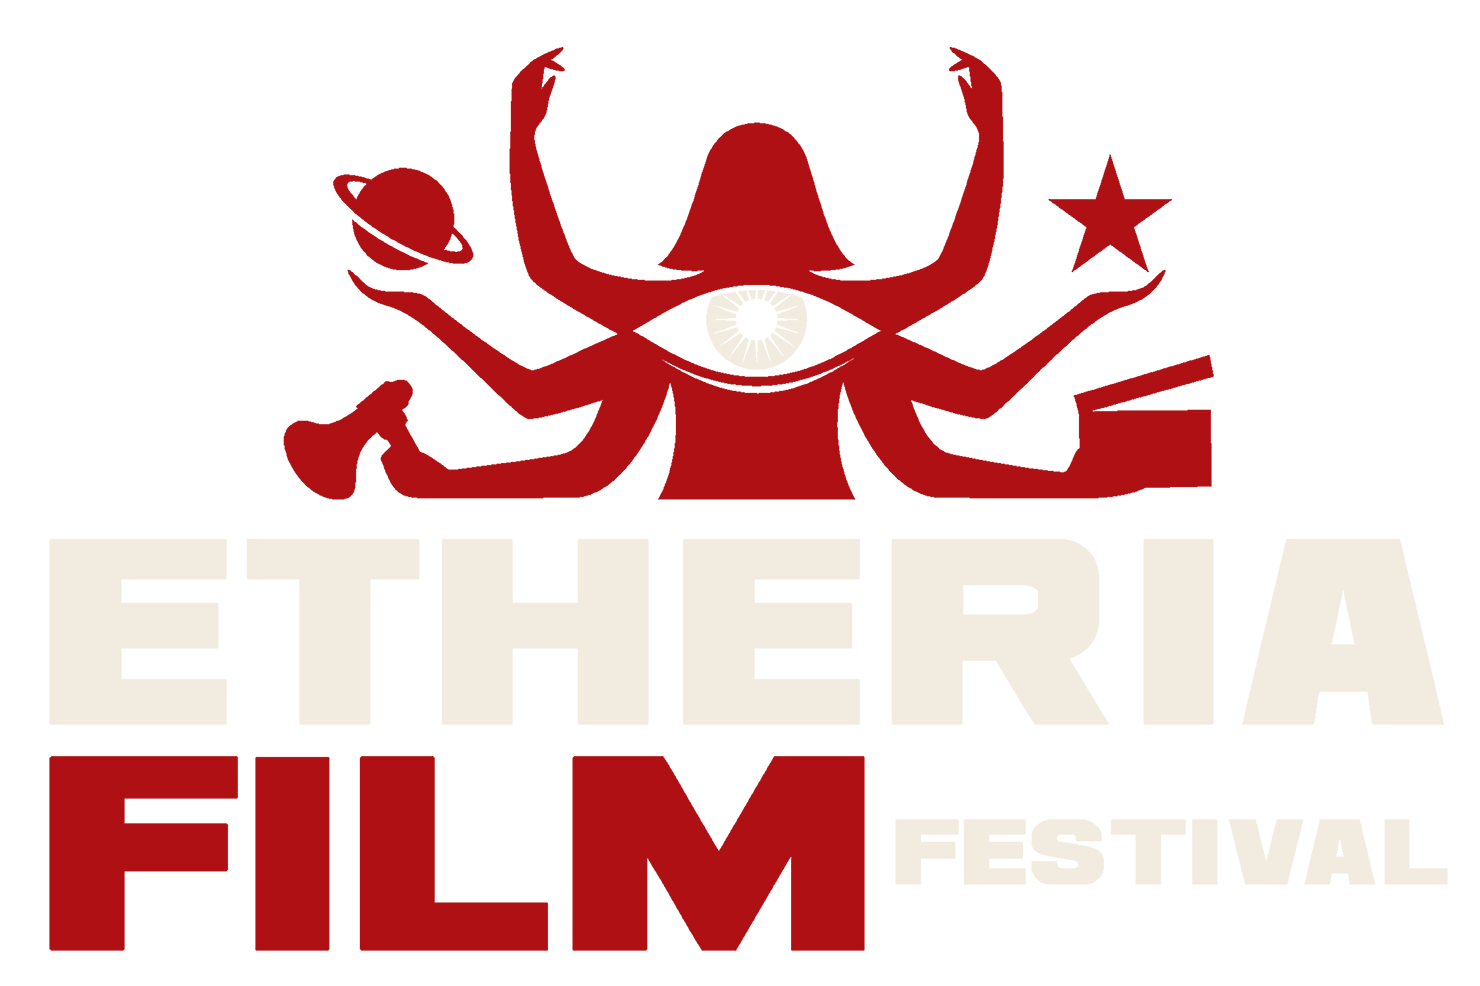 Etheria2 smaller logo